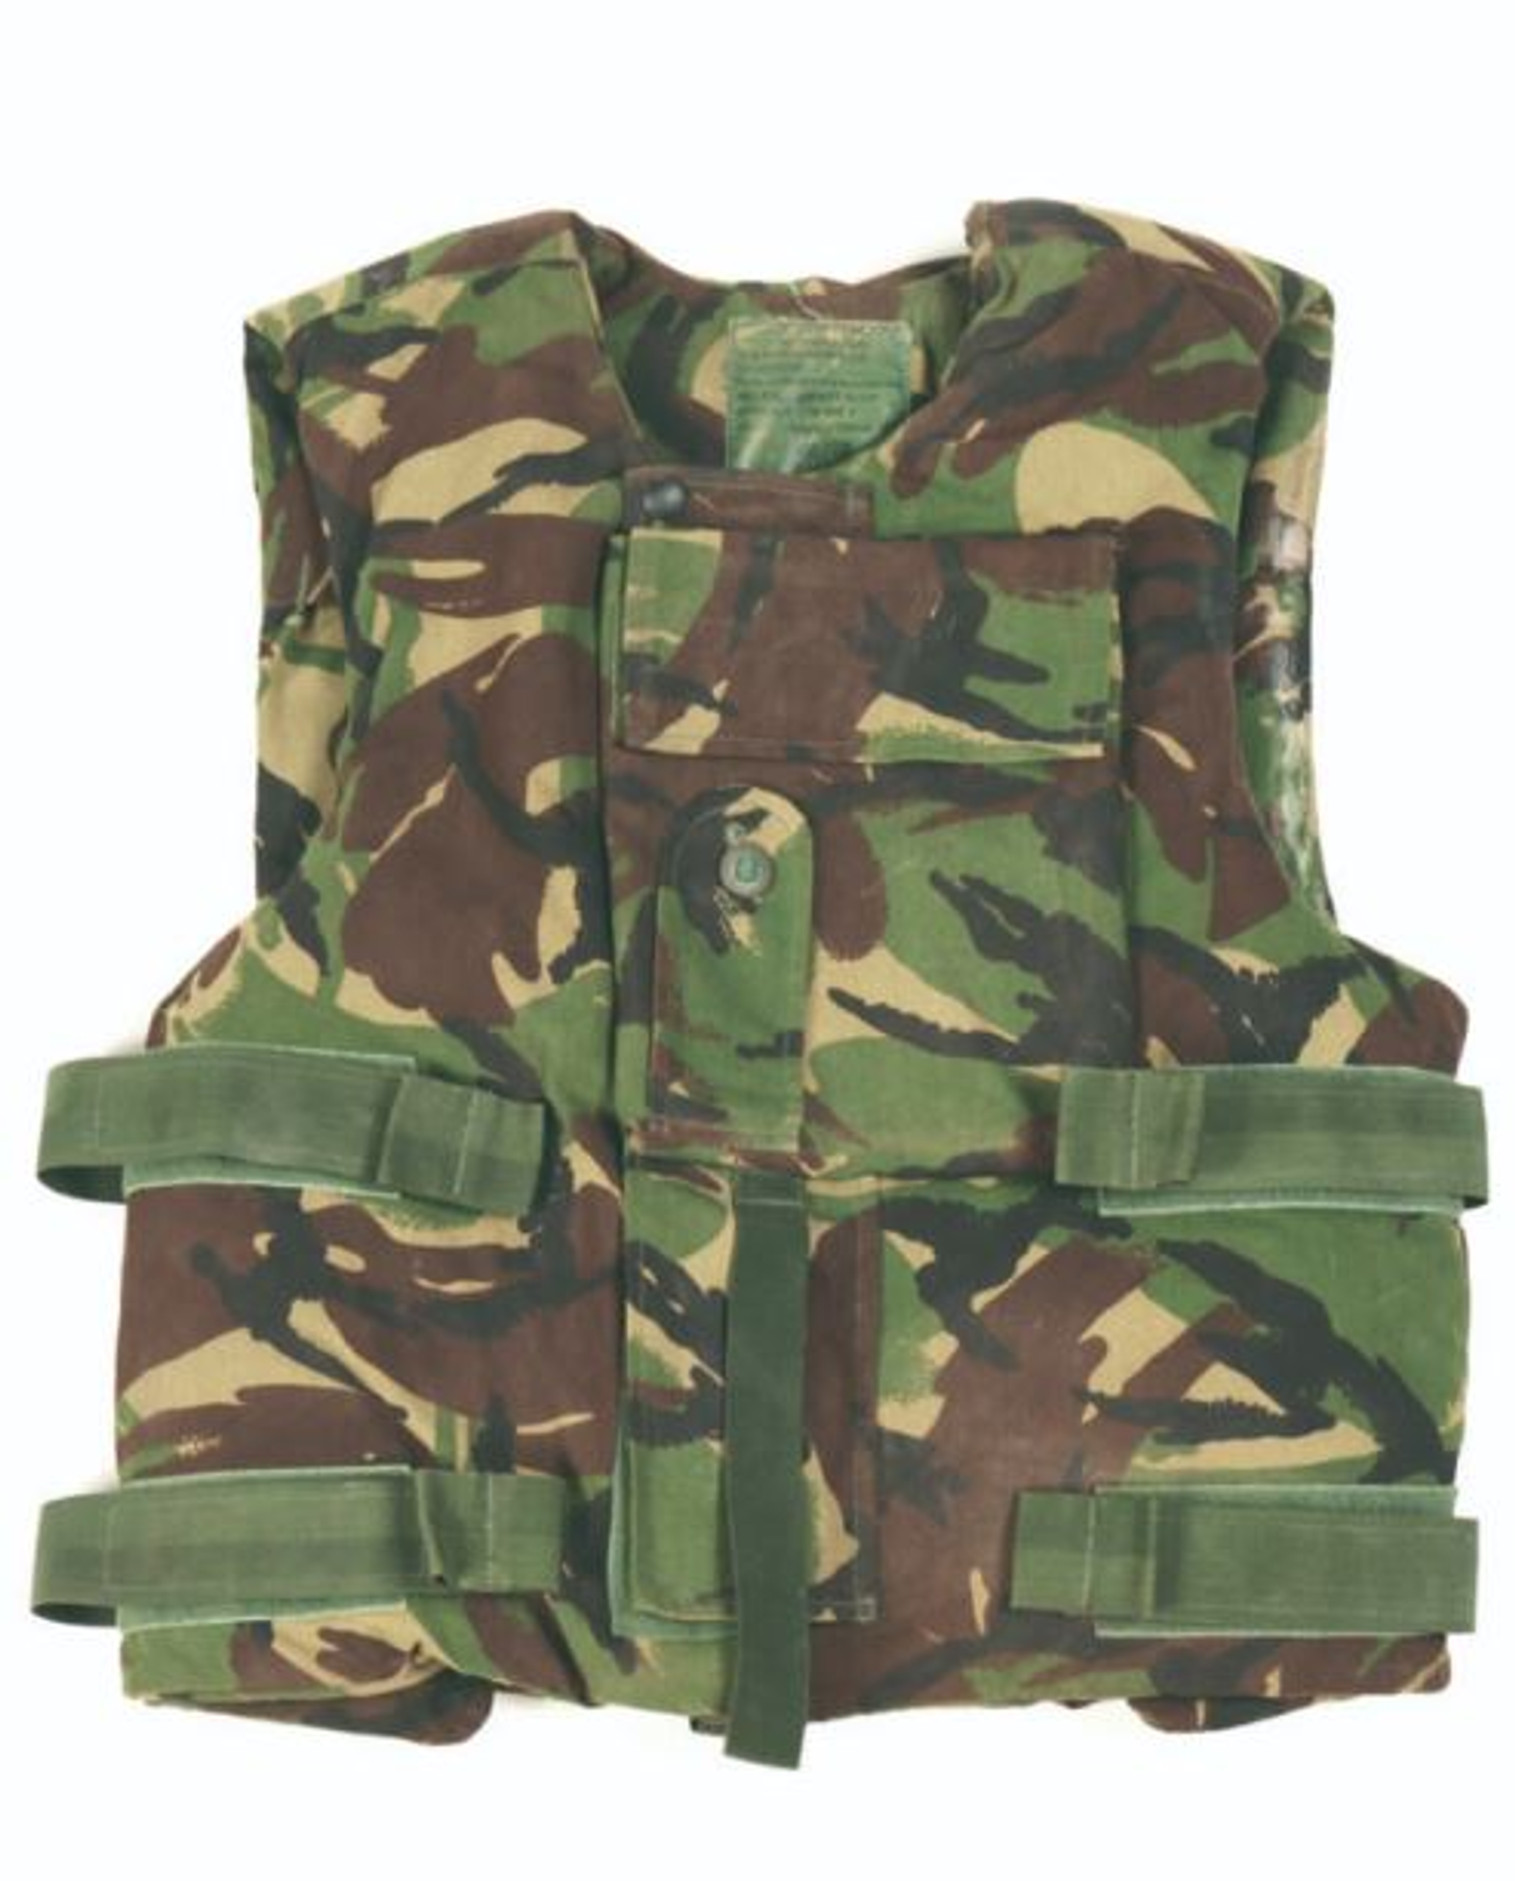 British Armed Forces DPM Camo Flak Vest Cover